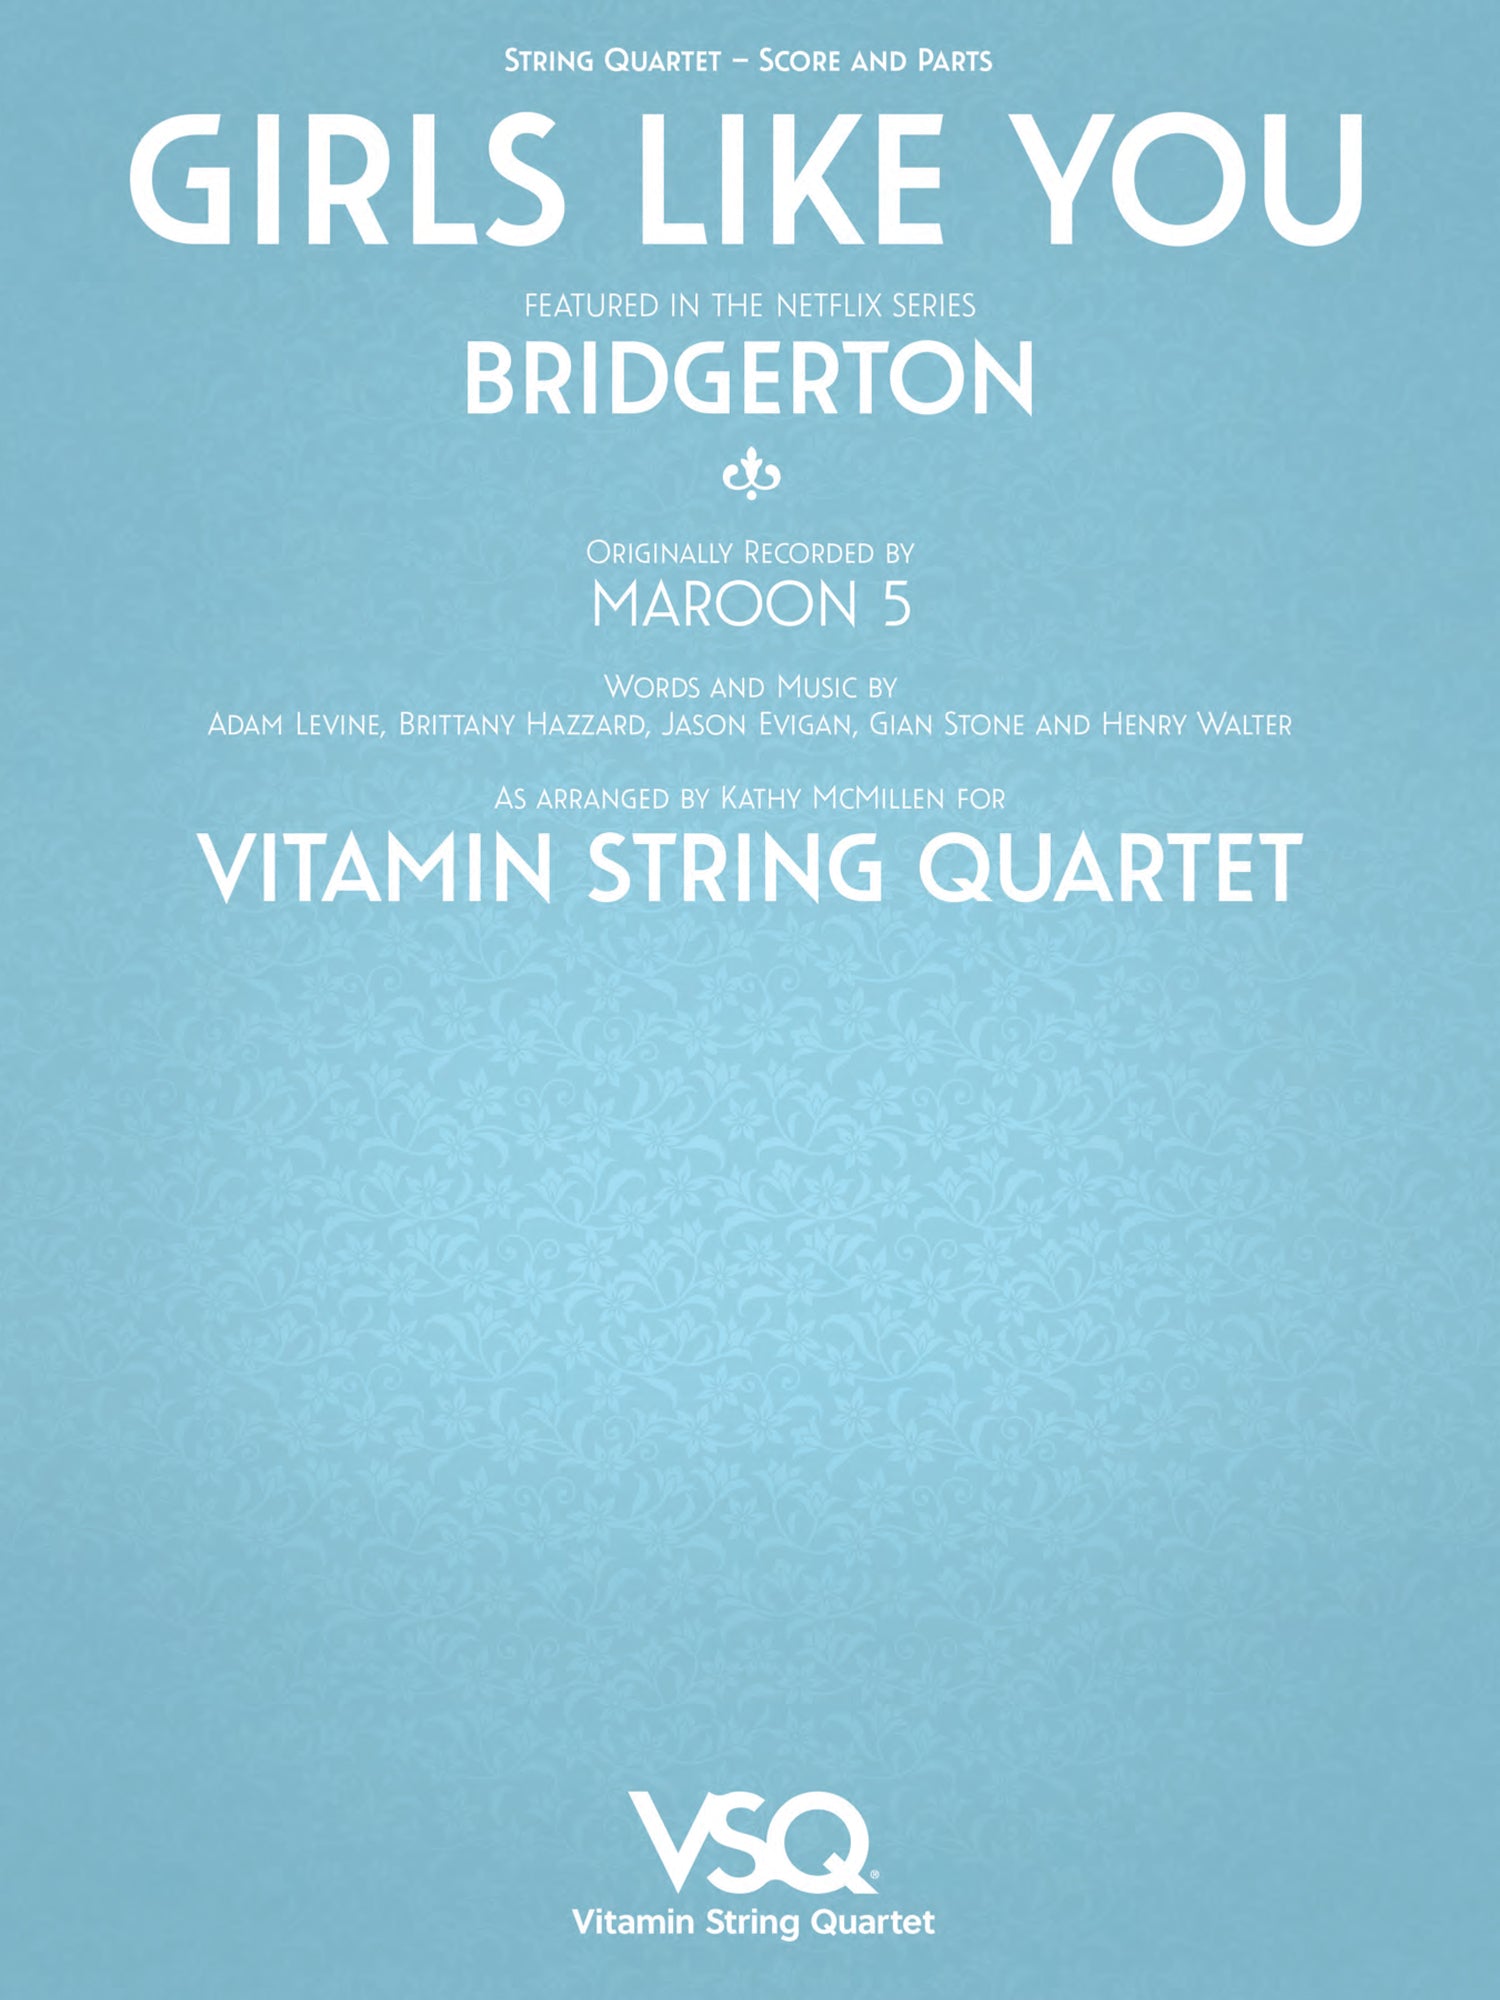 bridgerton covers - girls like you vsq tribute